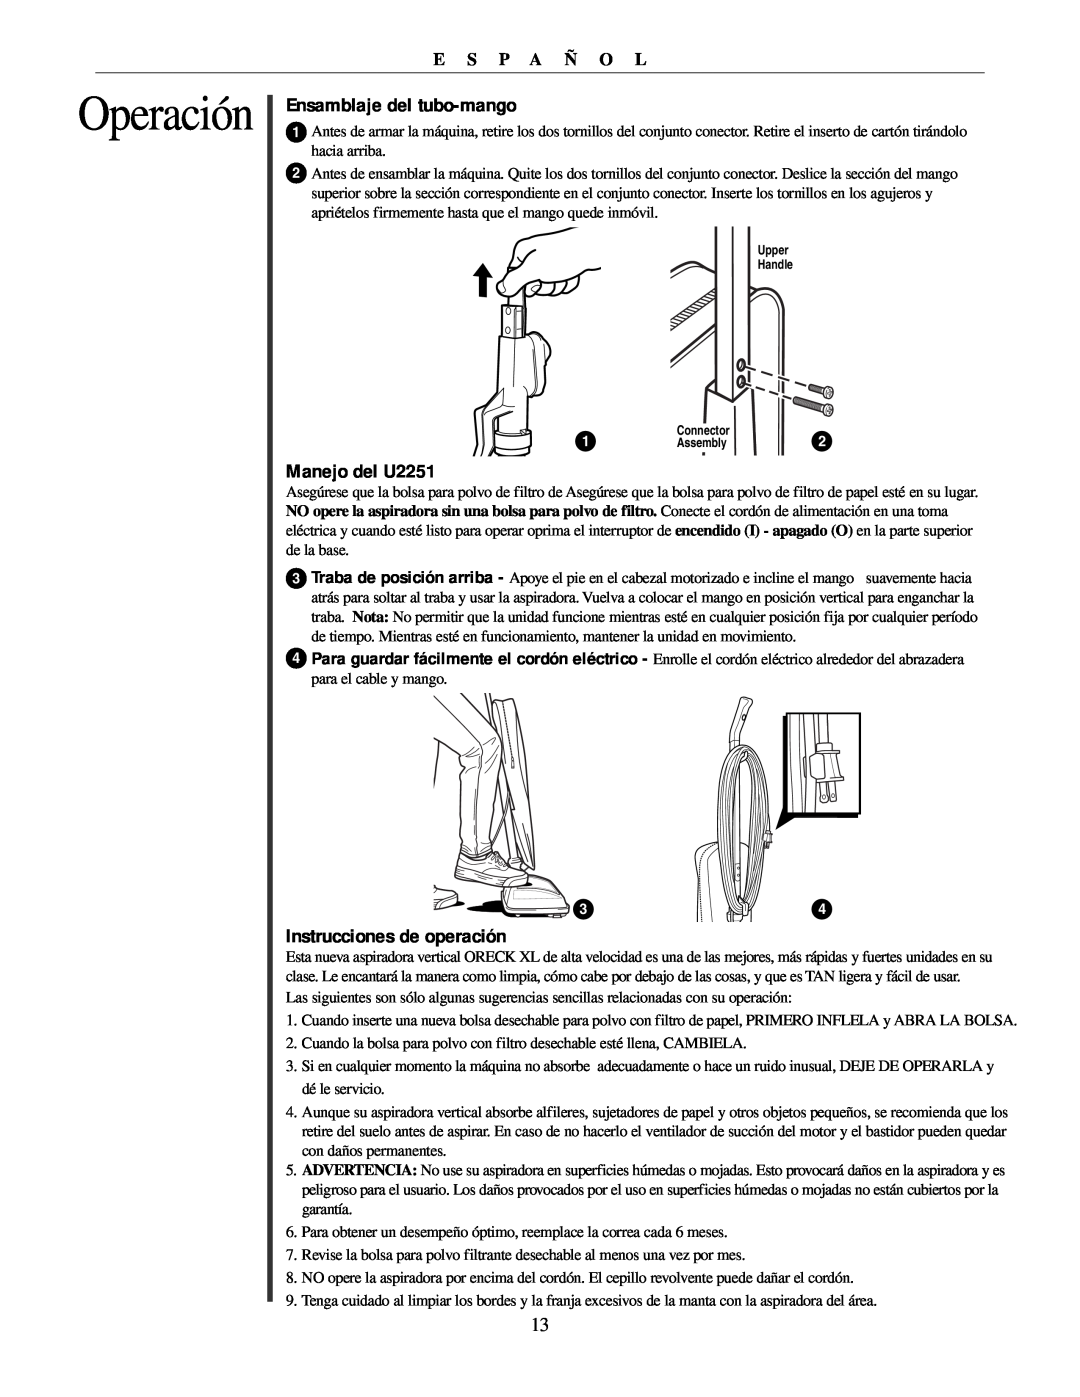 Oreck manual Ensamblaje del tubo-mango, Manejo del U2251, Instrucciones de operación, Operación, E S P A Ñ O L 